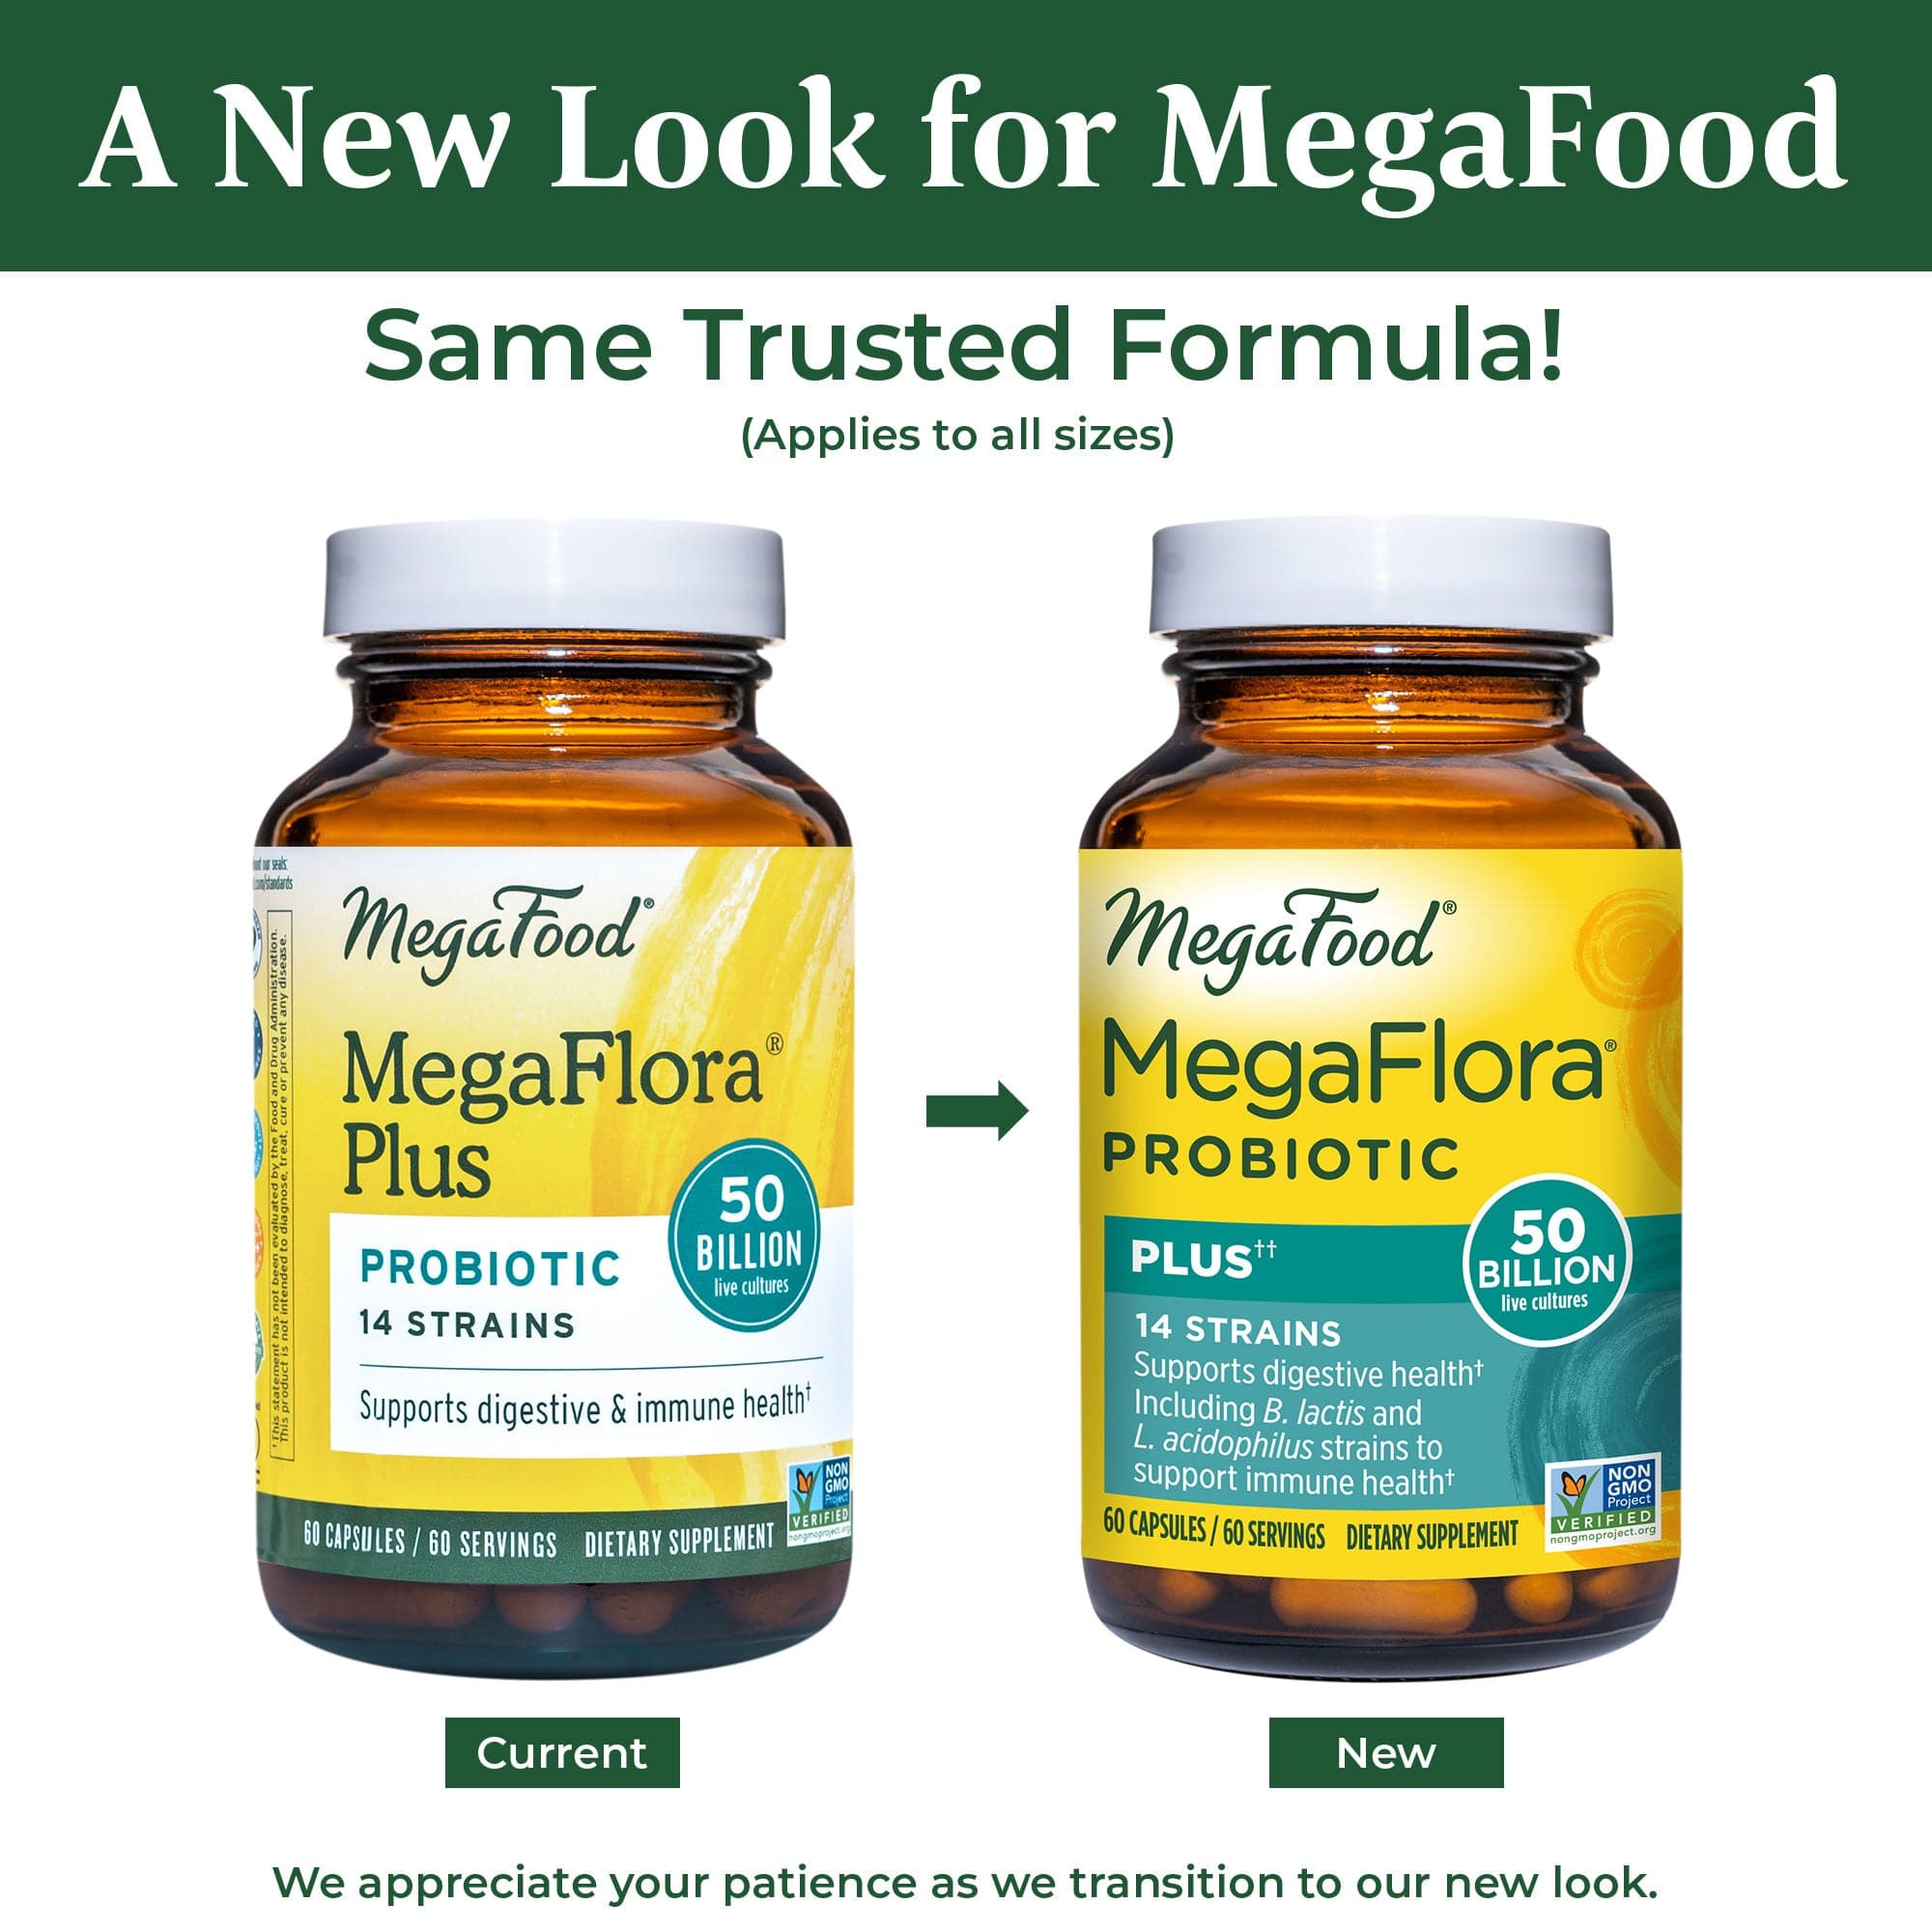 MegaFood MegaFlora Probiotic Plus